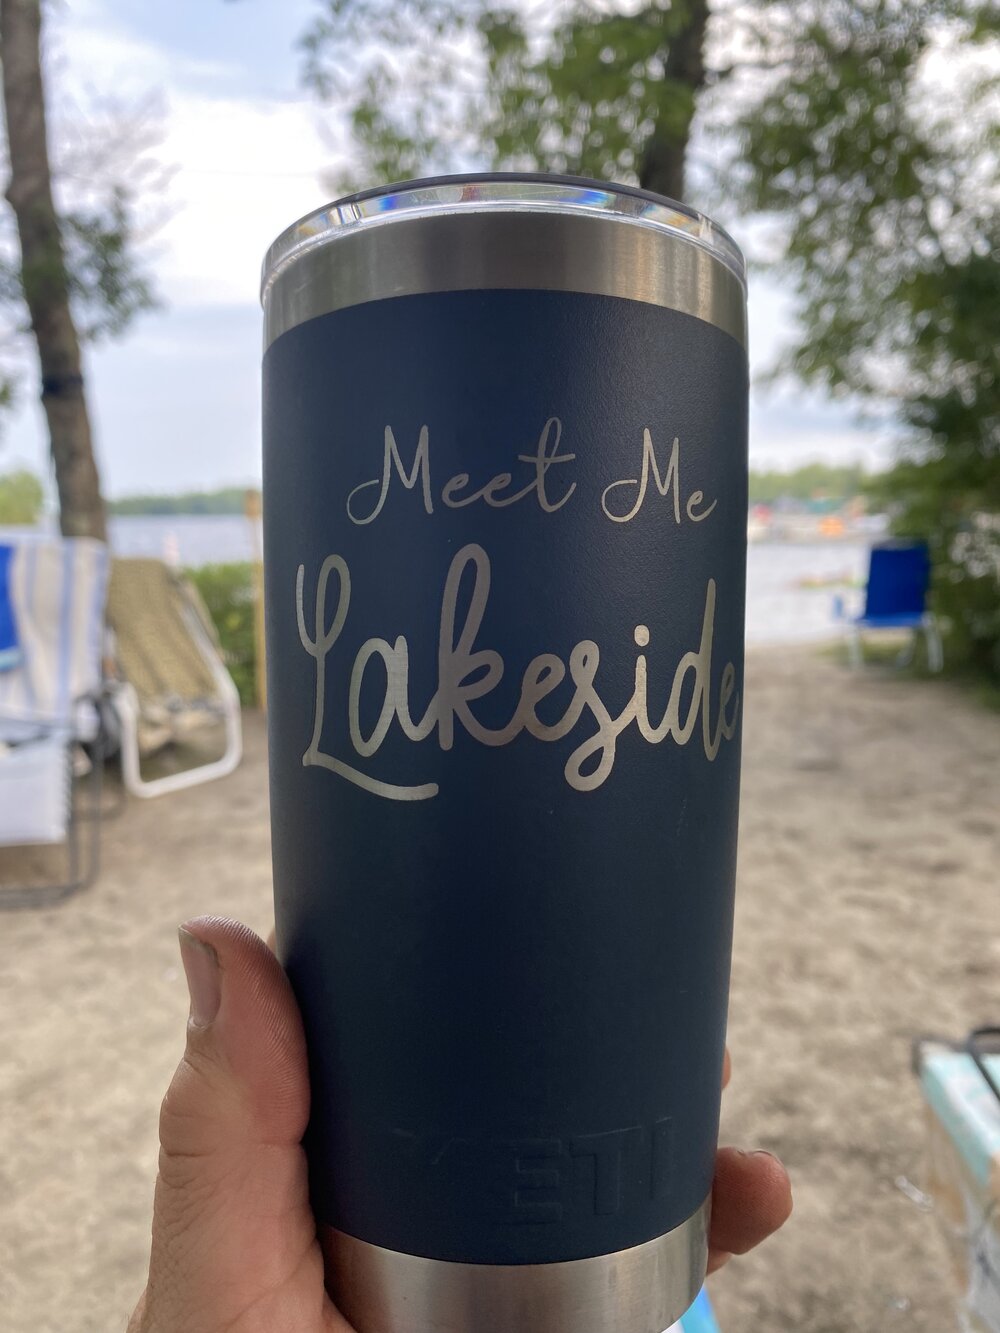 Meet Me Lakeside 30oz YETI Tumbler — Lakeside Norway